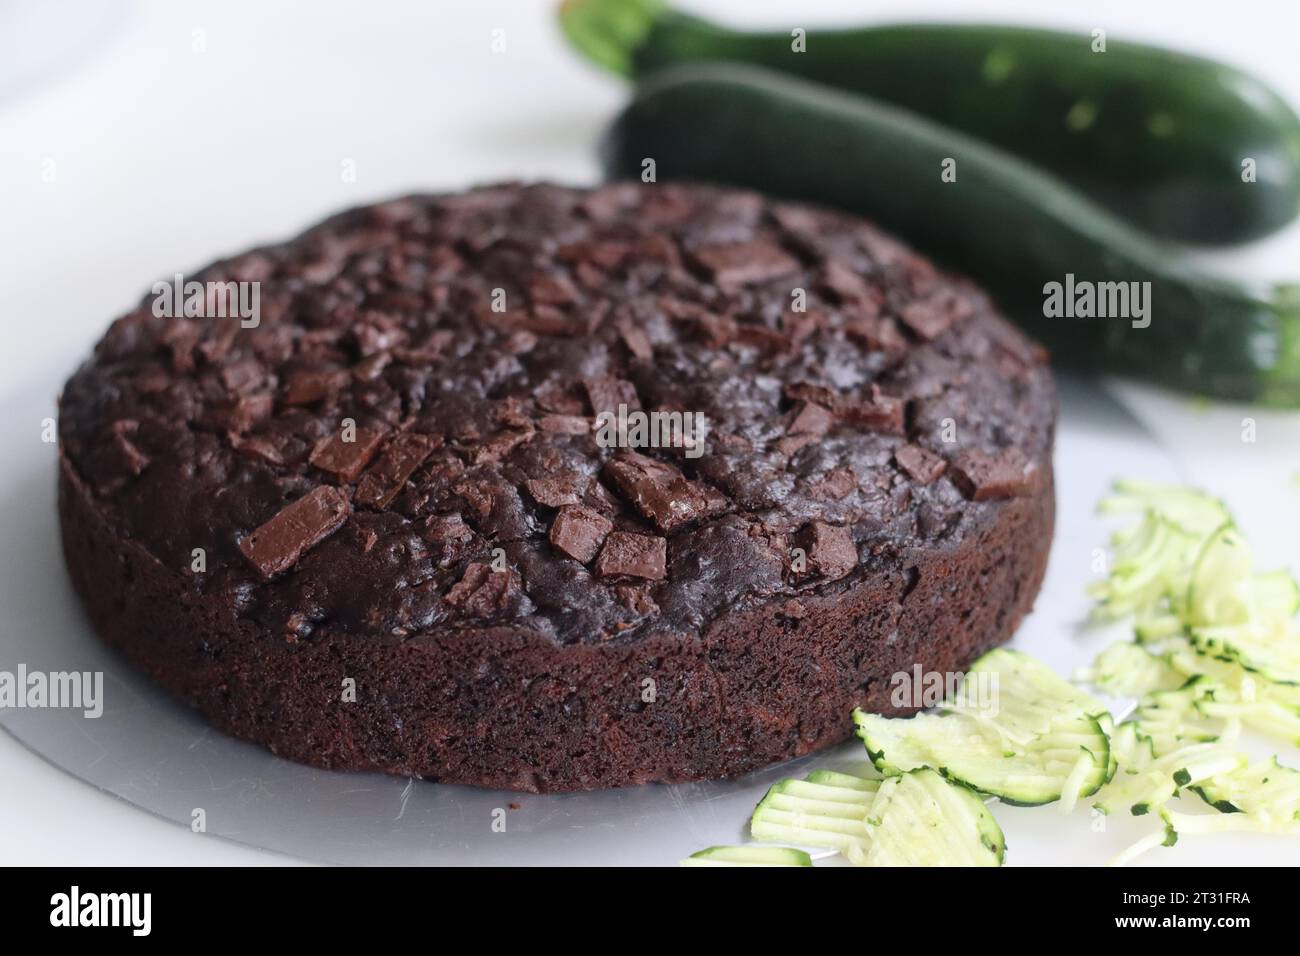 Gâteau au chocolat courgettes de forme ronde. Gâteau au chocolat double humide avec courgettes râpées, poudre de coco, chocolat et pépites de chocolat. Tiré sur fond blanc Banque D'Images